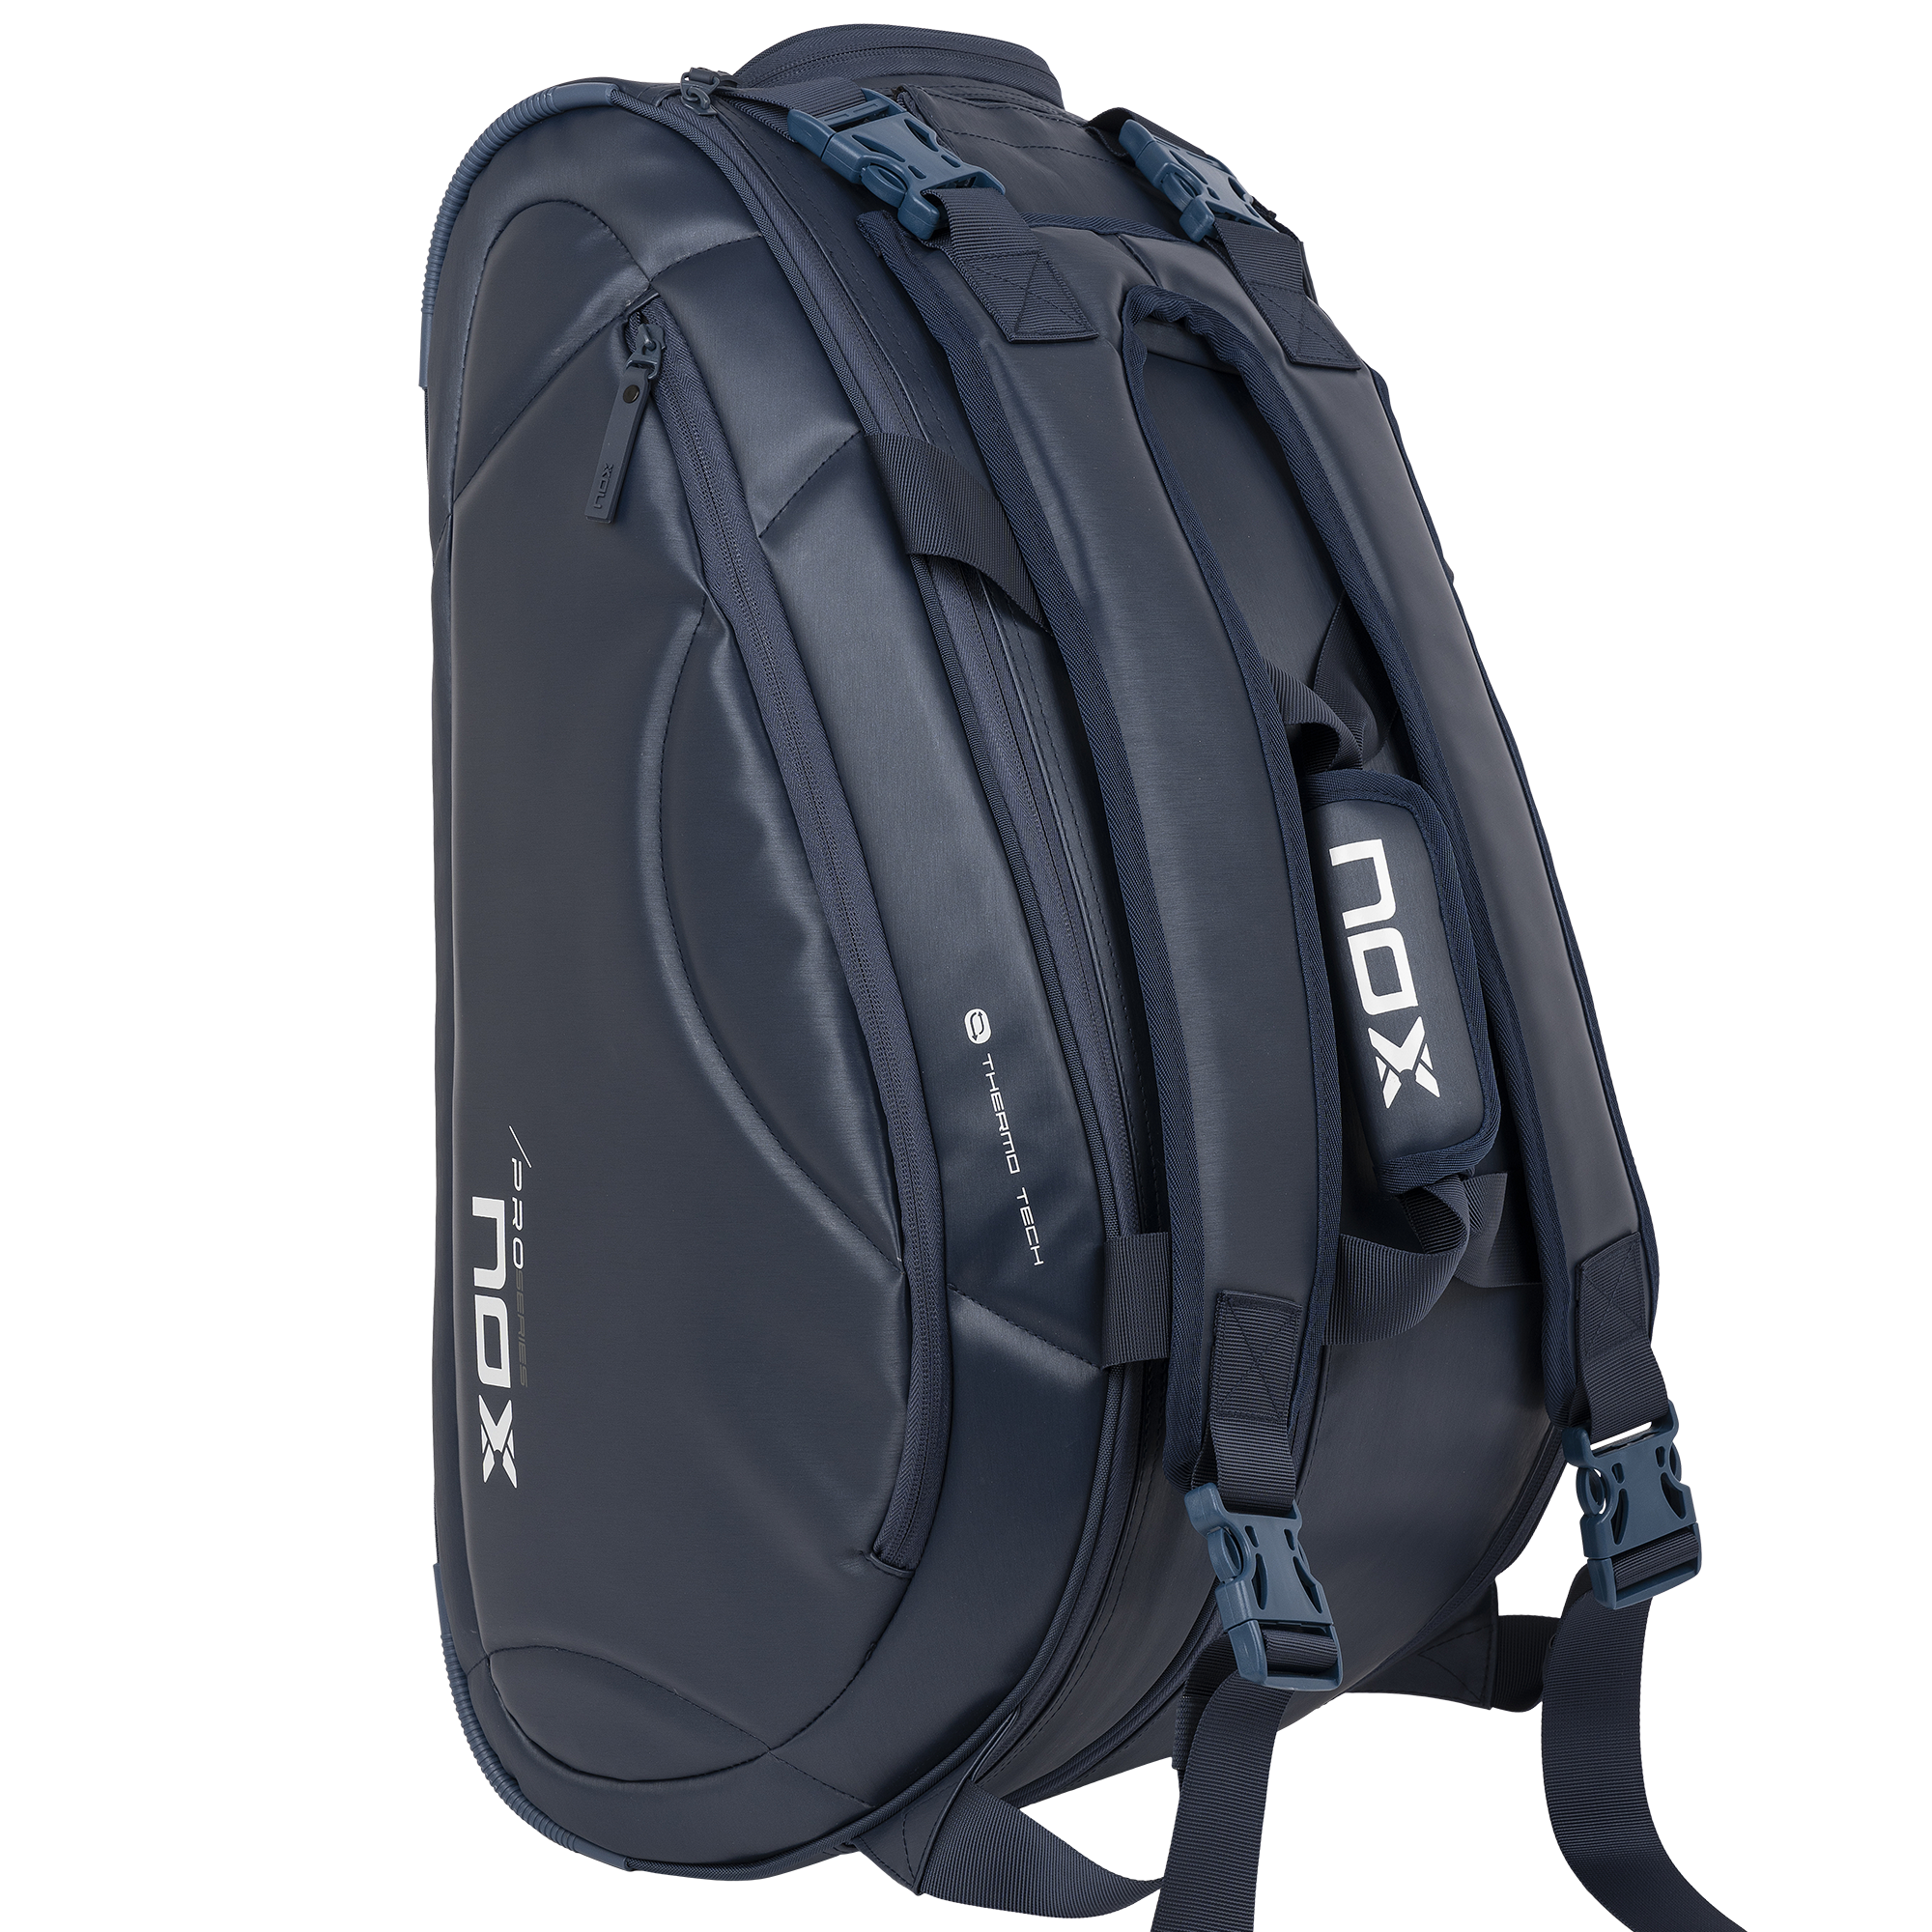 NOX Navy Pro Series Racket Bag